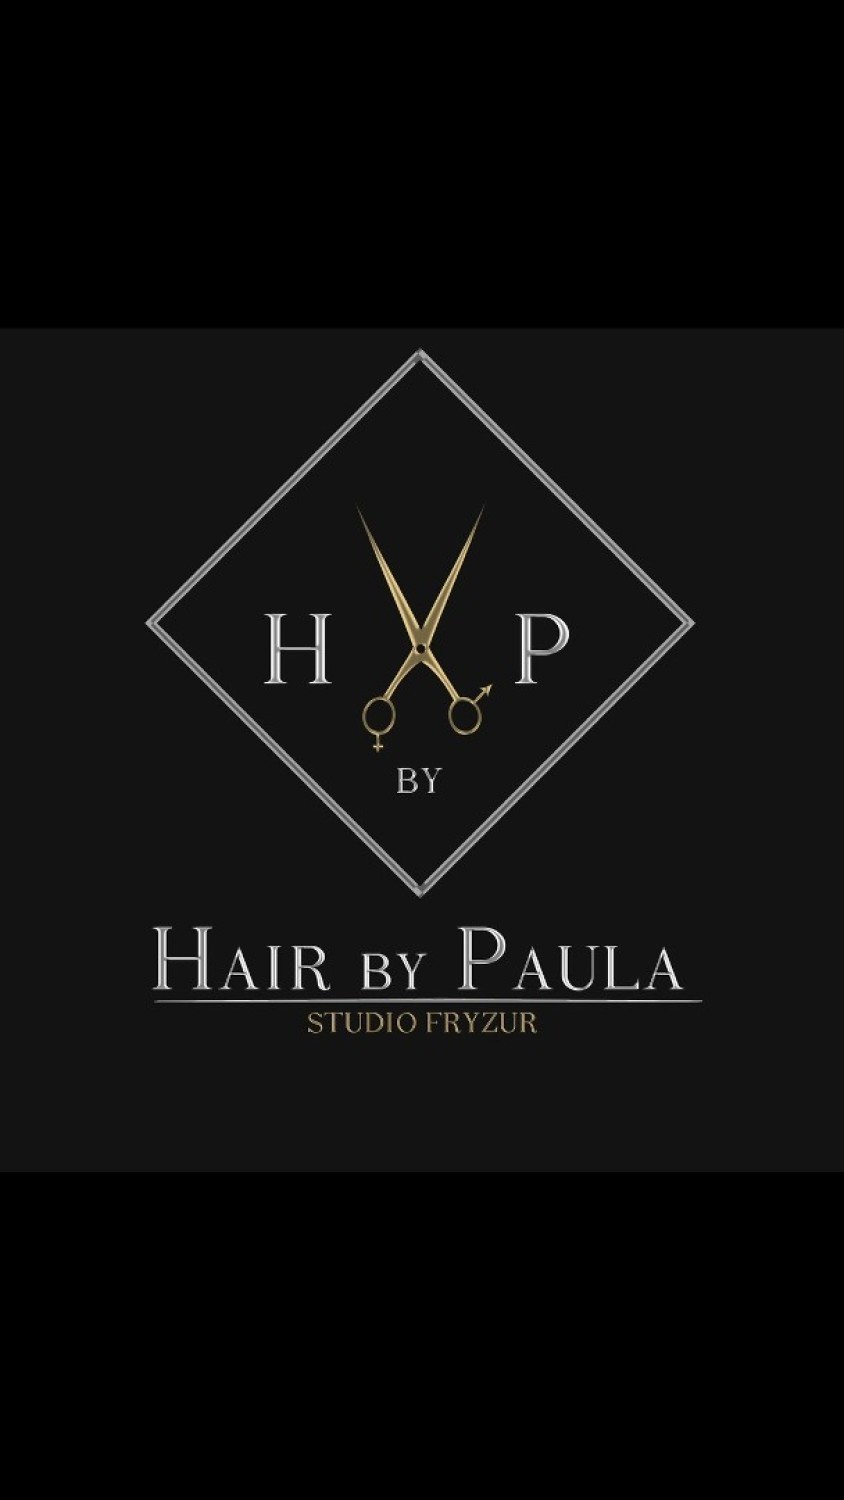 Kategorię Salon Fryzjerski Roku wygrał Hair By Paula